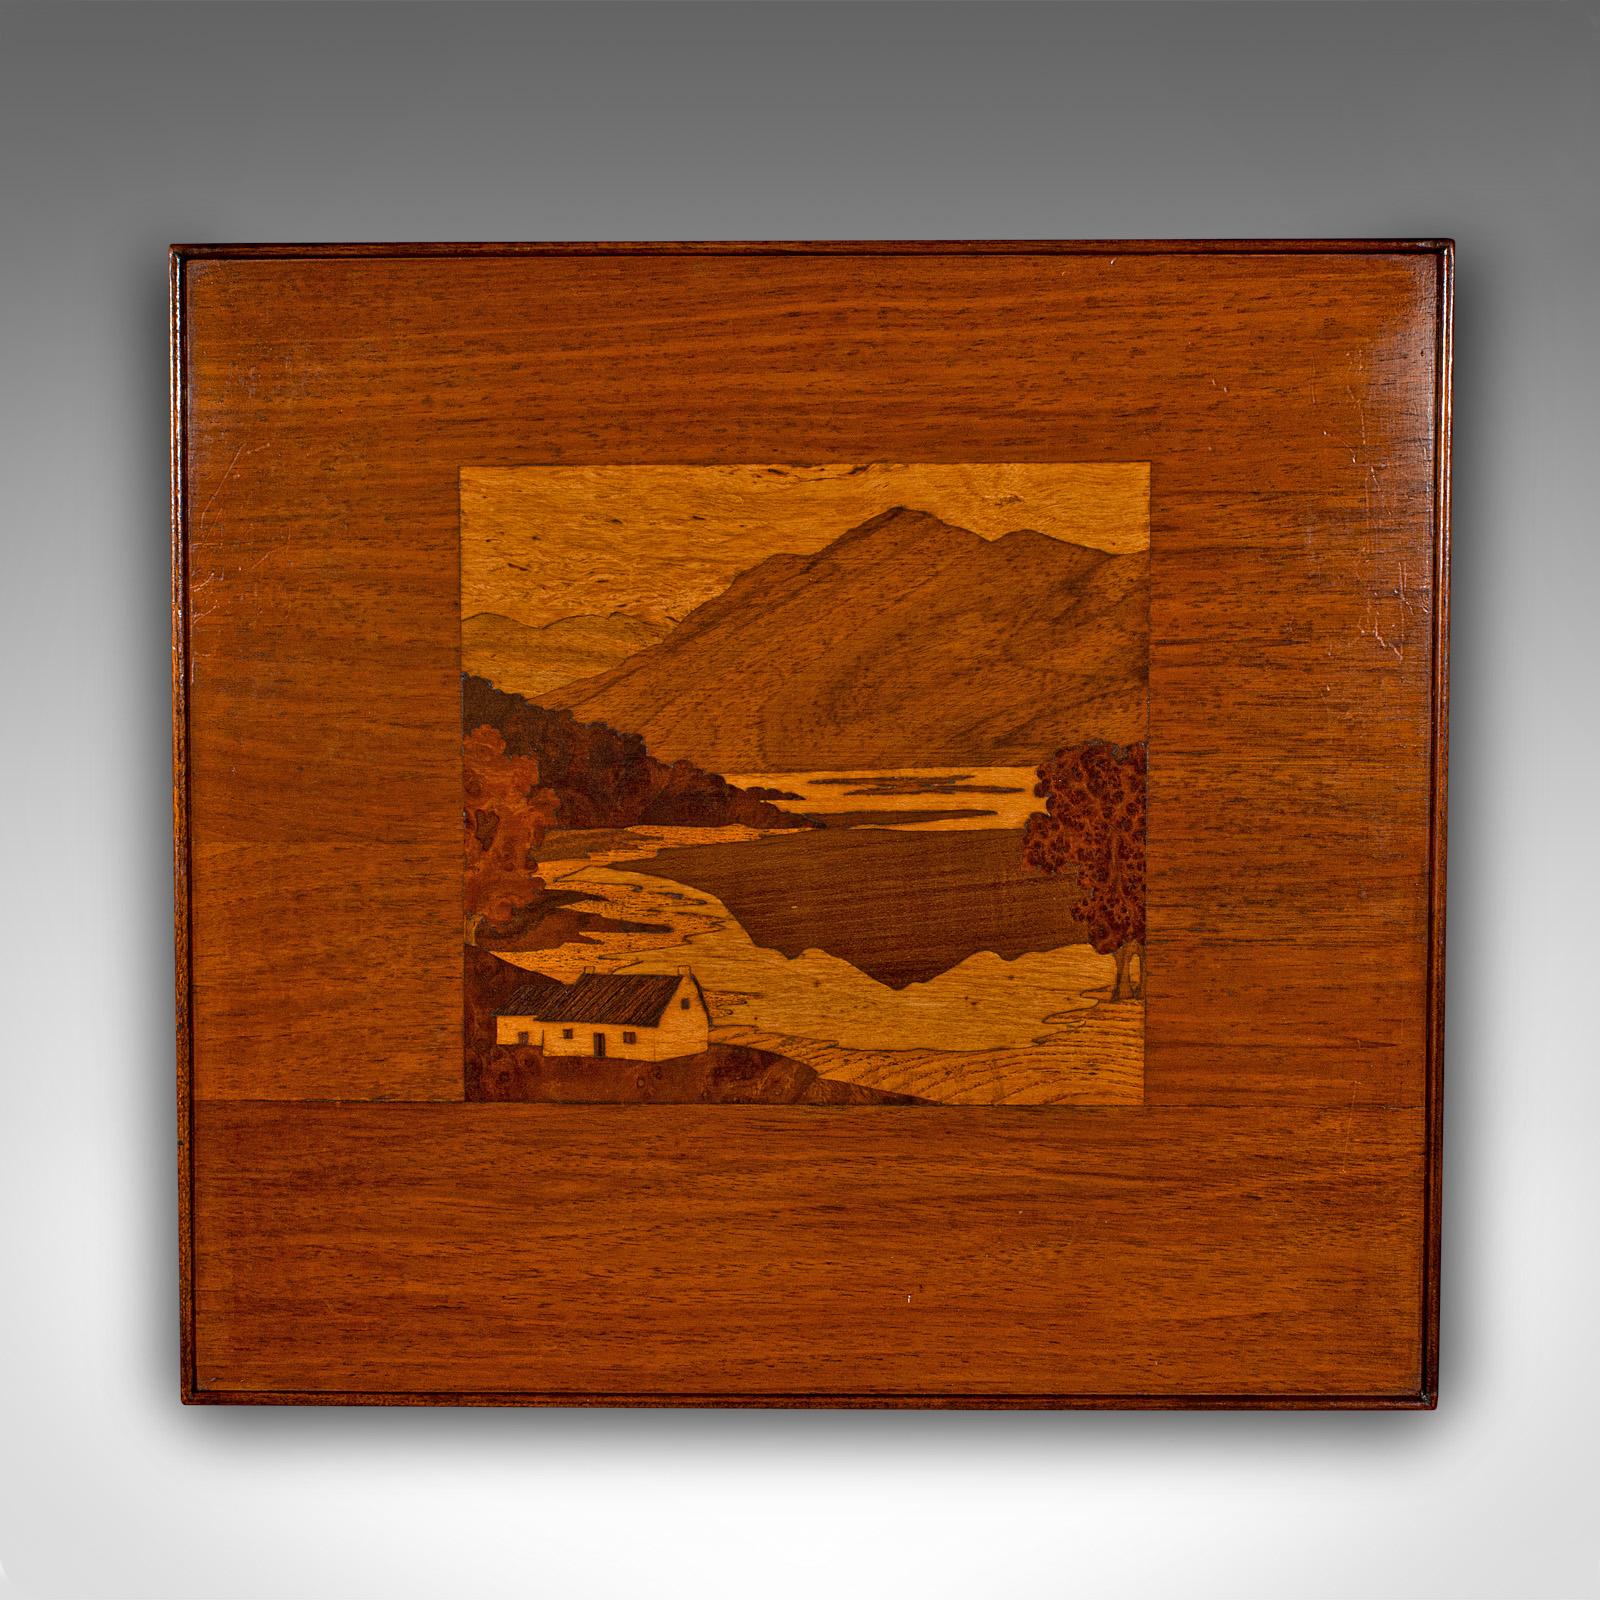 Dies ist eine antike Einlegearbeit Landschaft Panel. Eine dekorative Szene des Ben Lomond aus Mahagoni, Eiche und Wurzelnuss, aus der Edwardianischen Zeit, um 1910.

Faszinierende hölzerne Landschaftsszene eines schottischen Berges und eines